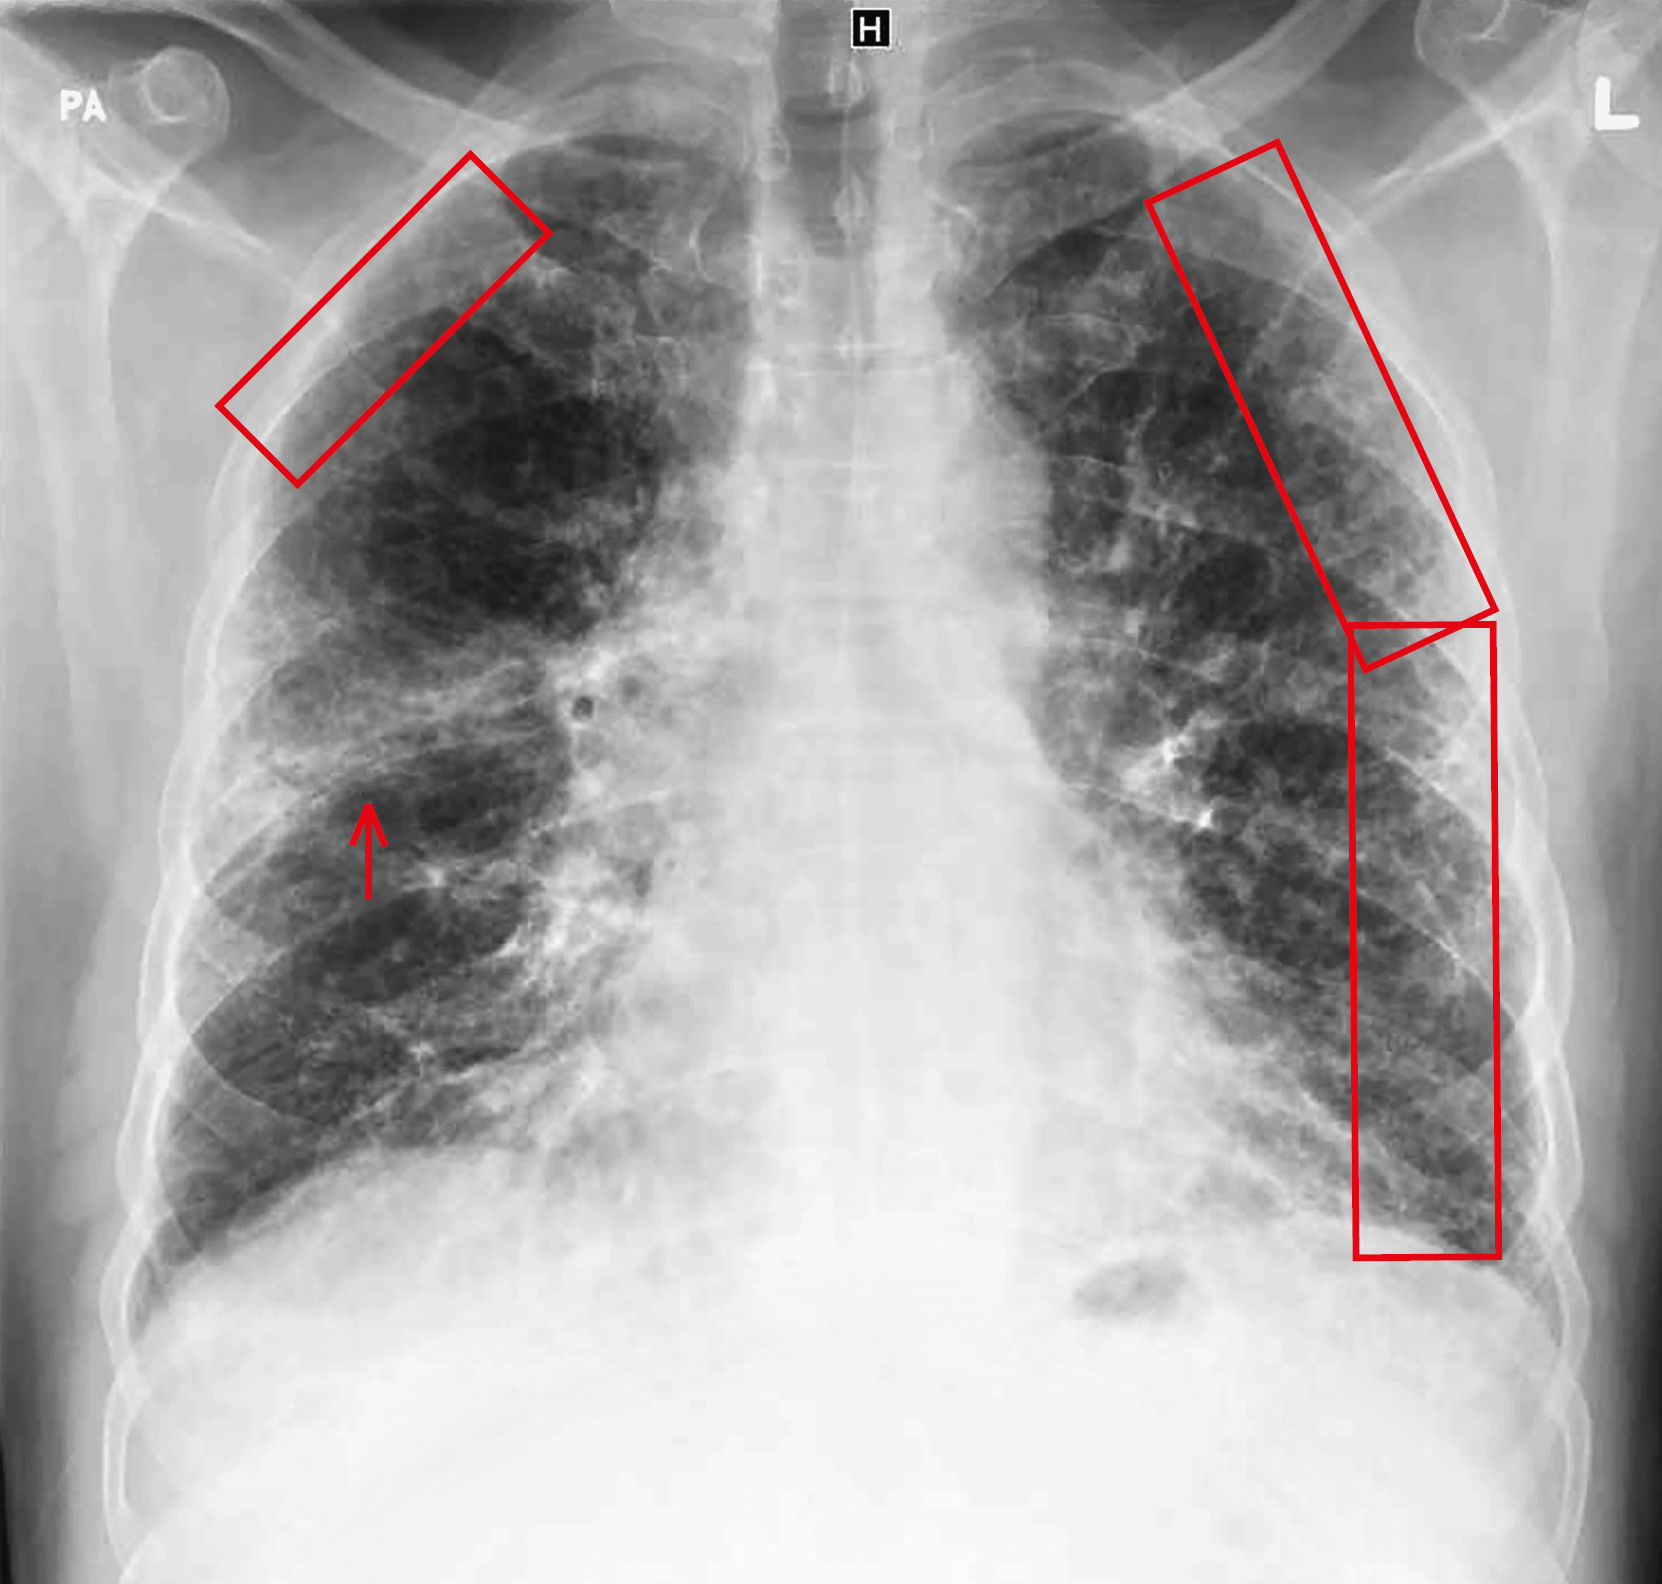 РГ грудної клітки із зазначеними ураженнями: в обох легенях помітні ретикулярні інтерстиціальні ураження (прямокутники), які розташовані периферично і не охоплюють центральні відділи легеневих полів. 